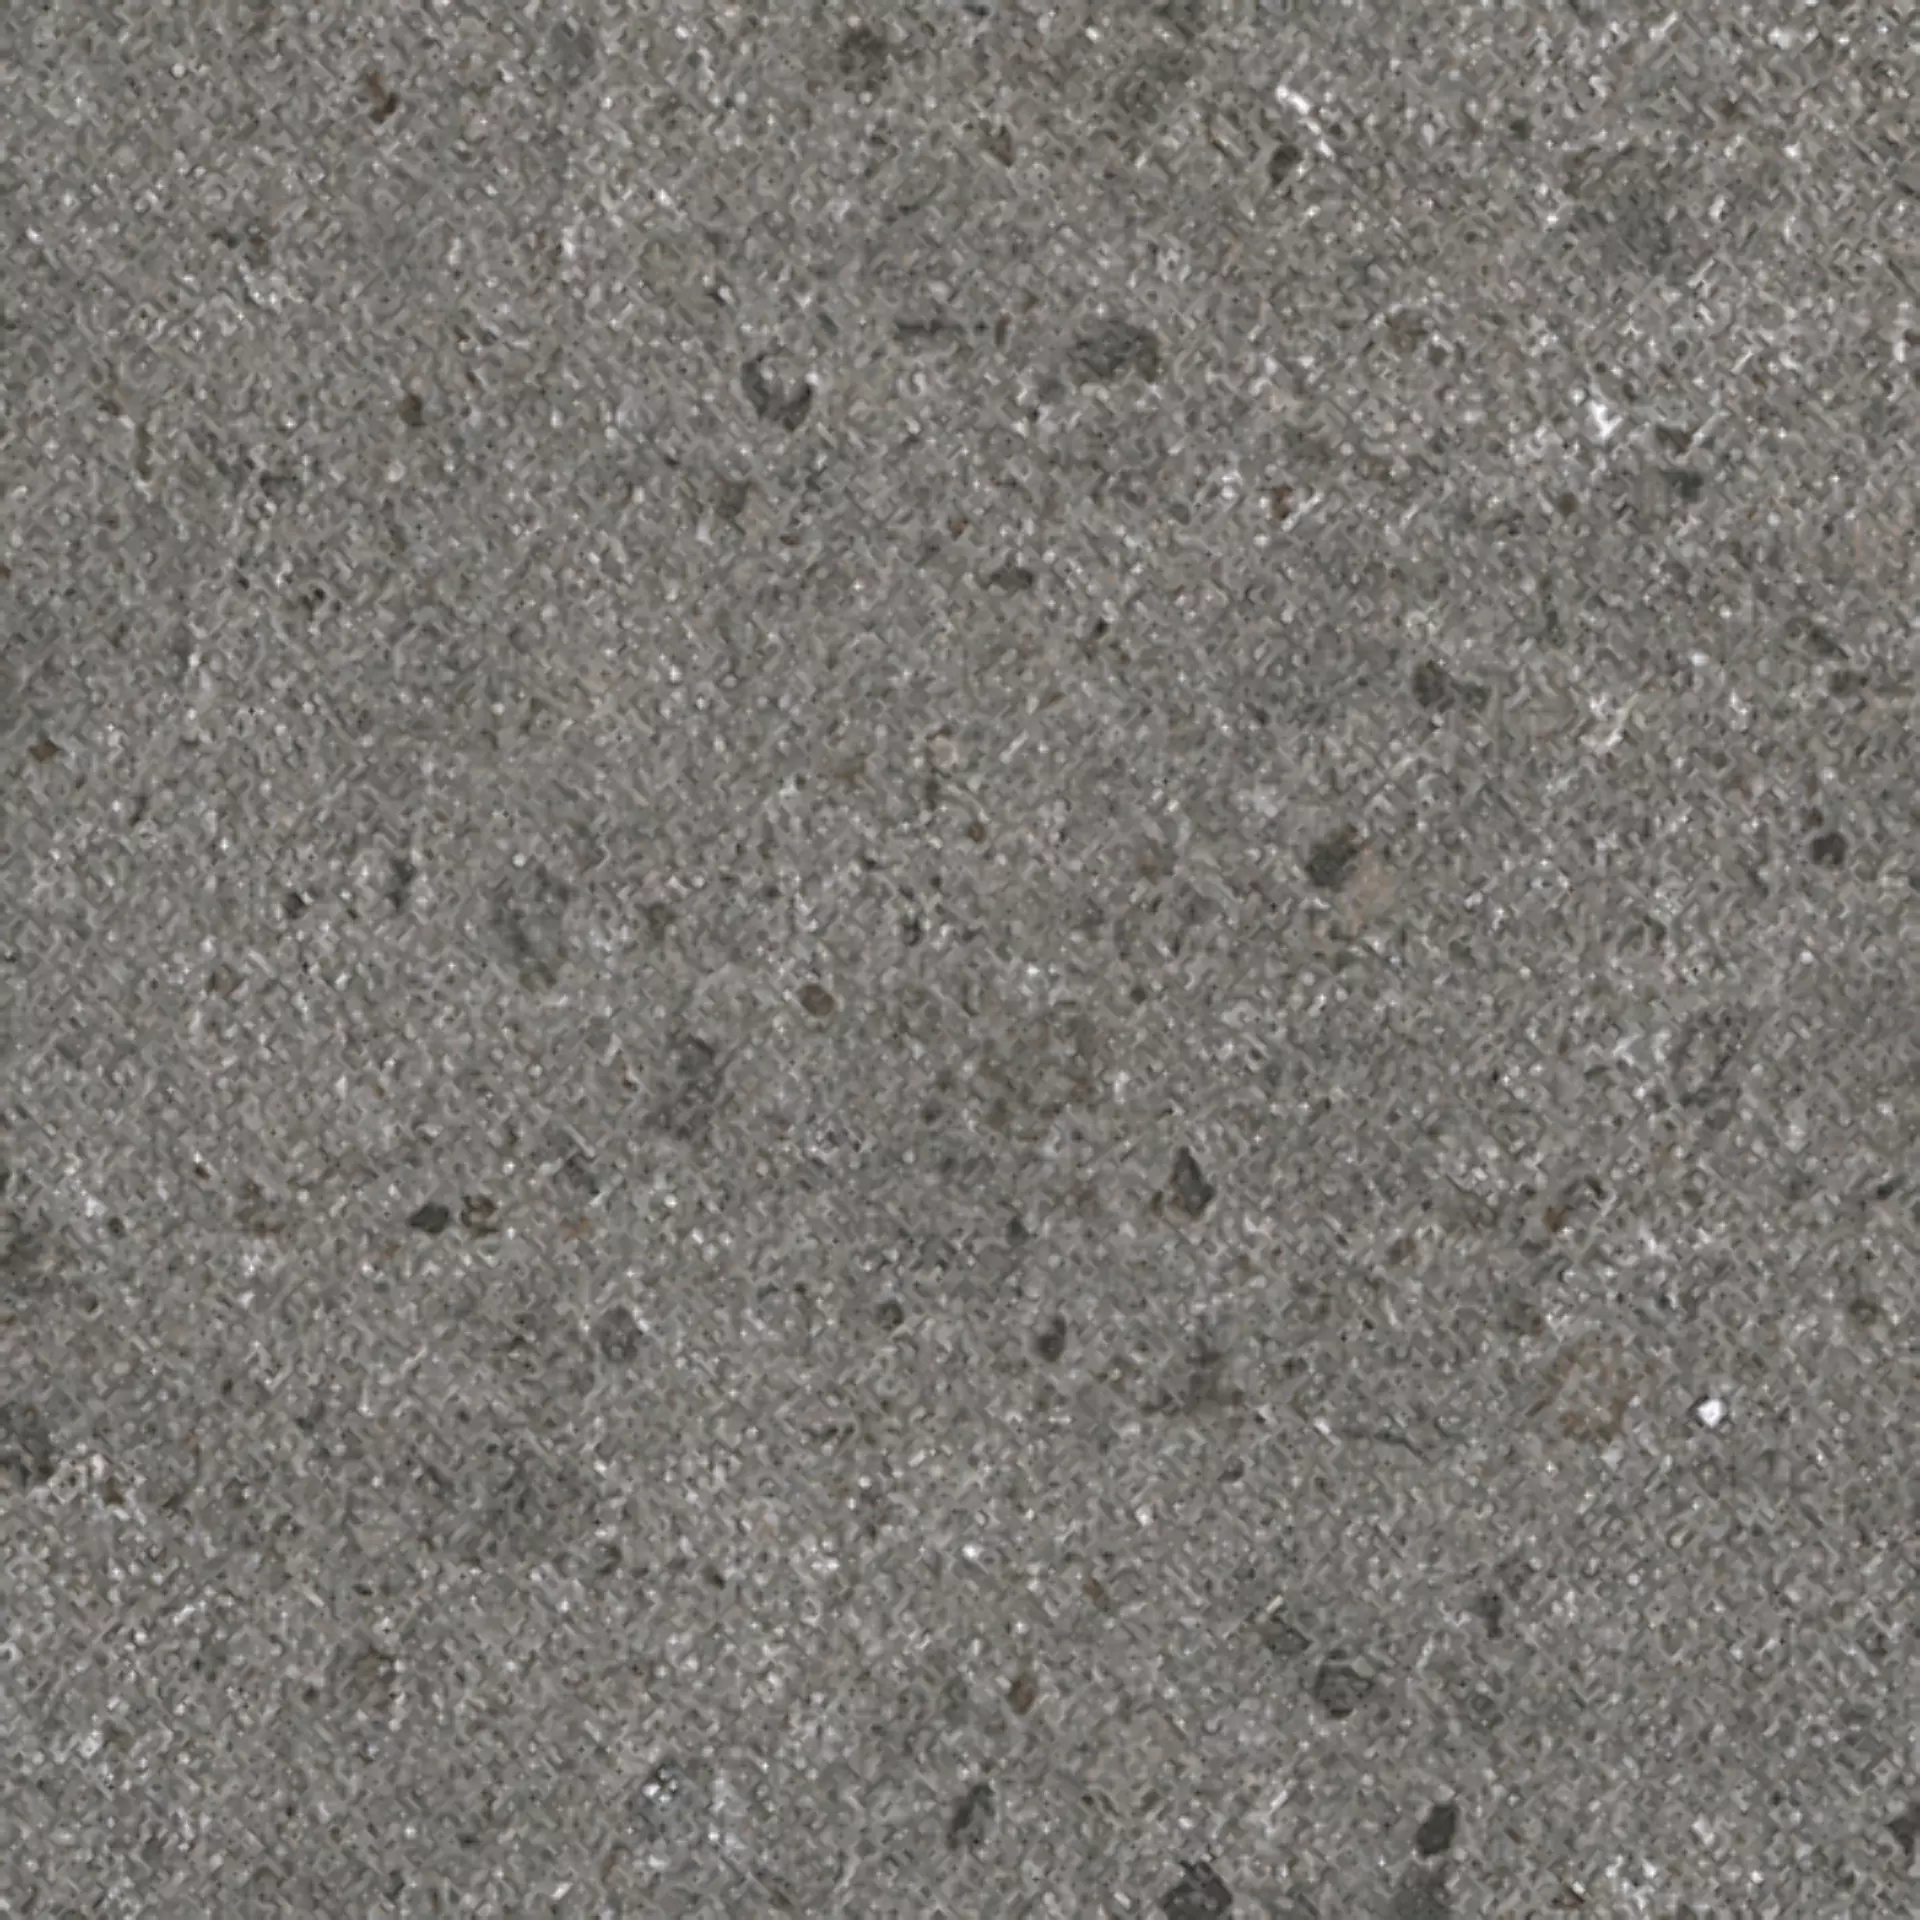 Wandfliese,Bodenfliese Villeroy & Boch Aberdeen Slate Grey Matt Slate Grey 2628-SB9R matt 30x30cm rektifiziert 10mm